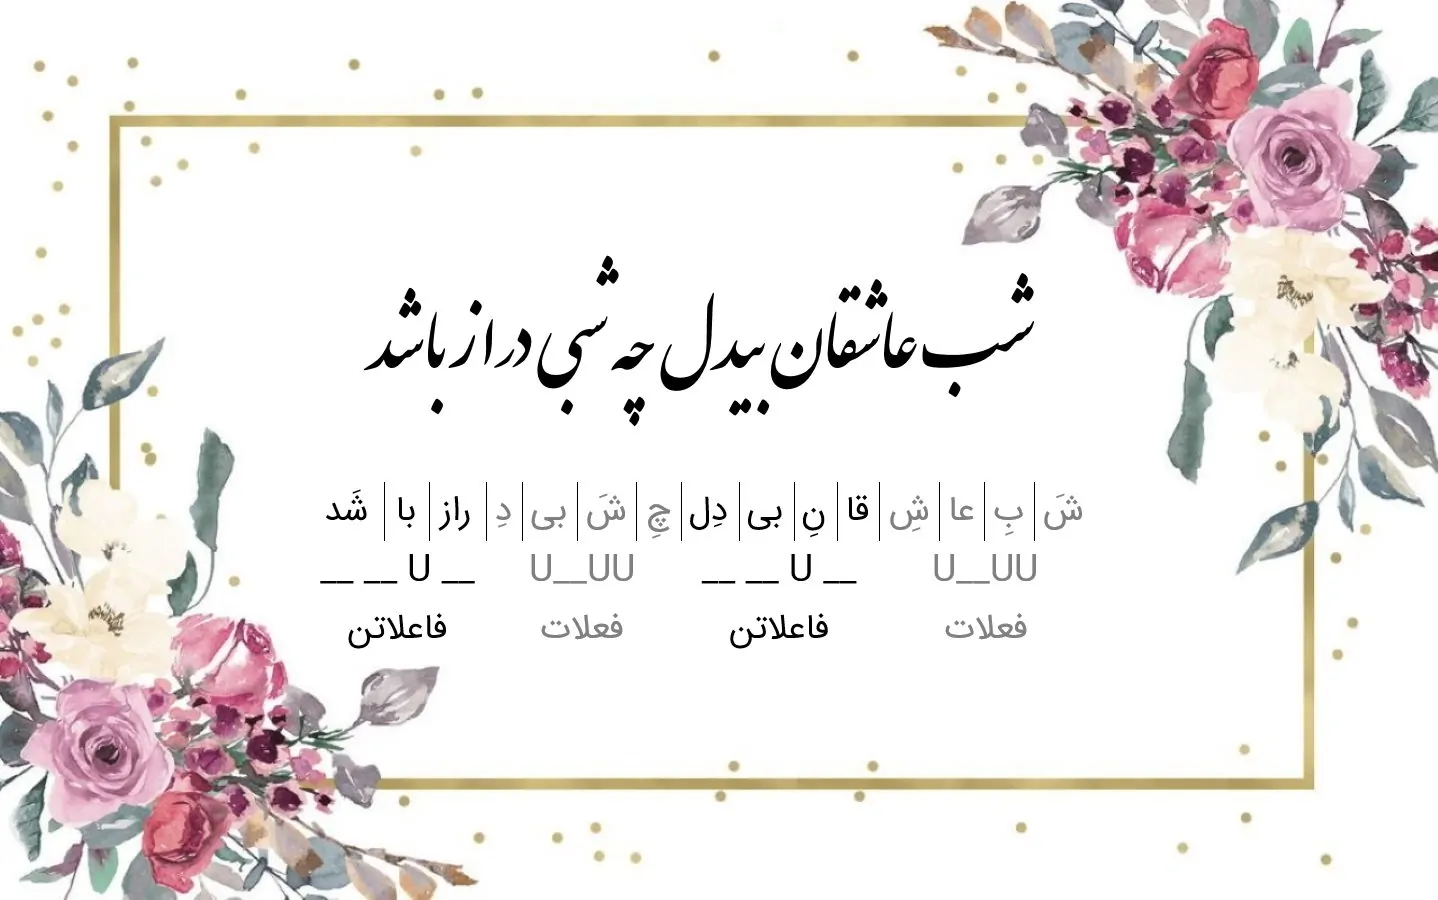 آموزش وزن شعر فارسی | به زبان ساده و گام به گام